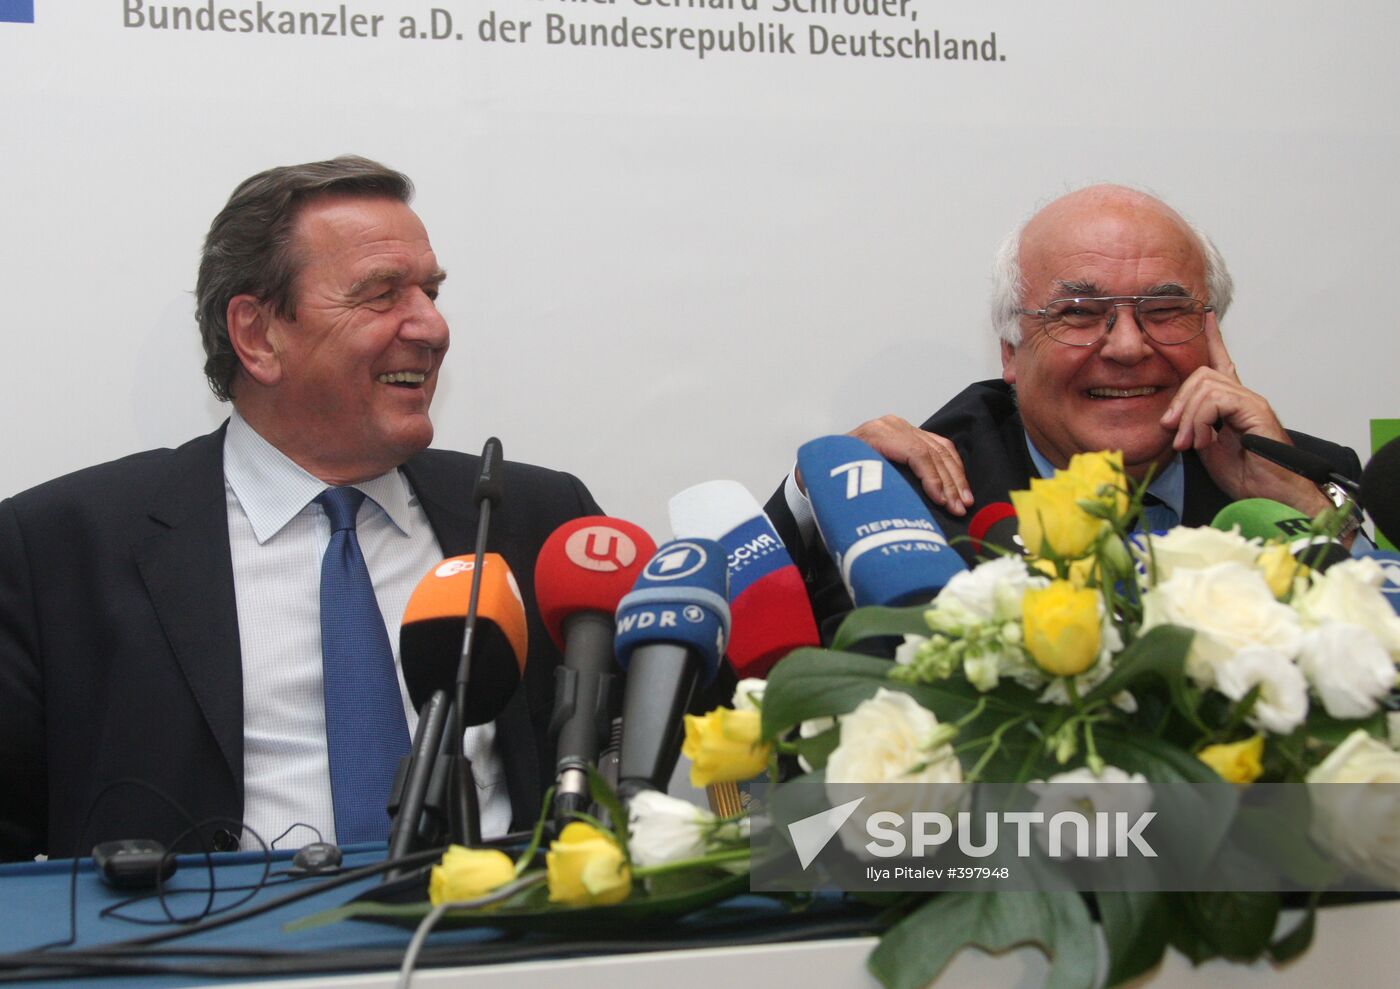 Gerhard Schröder and Martin Herrenknecht